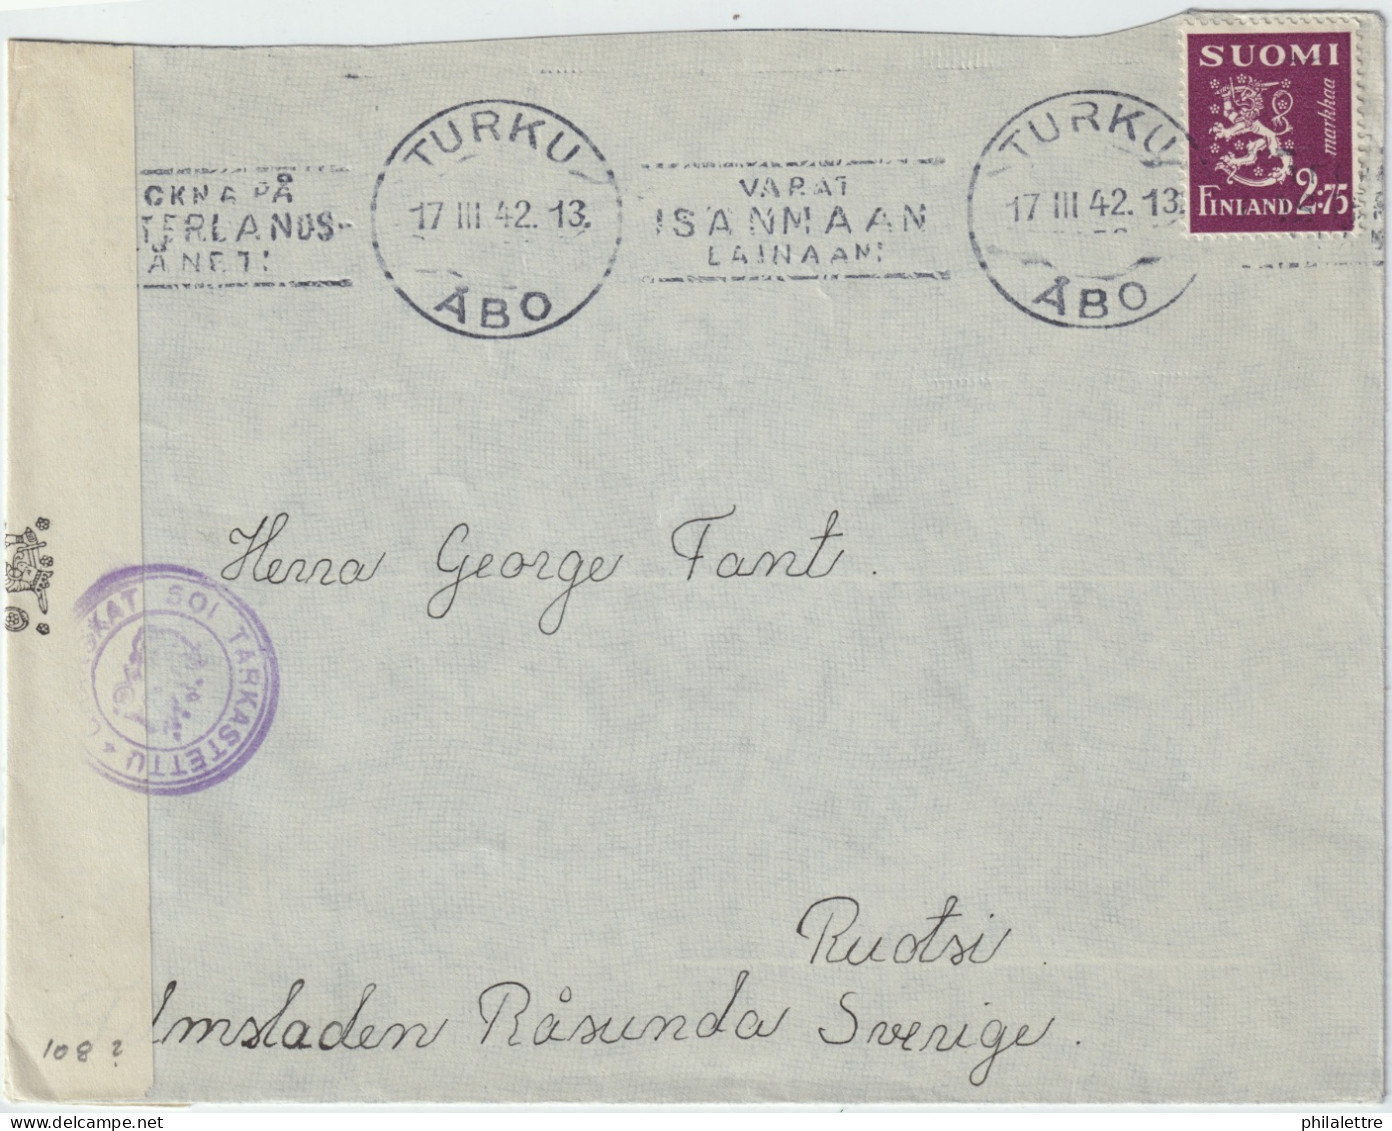 FINLAND - 1942 - Censored Cover From TURKU / ÅBO To Råsunda, Sweden Franked 2.75Mk - Briefe U. Dokumente